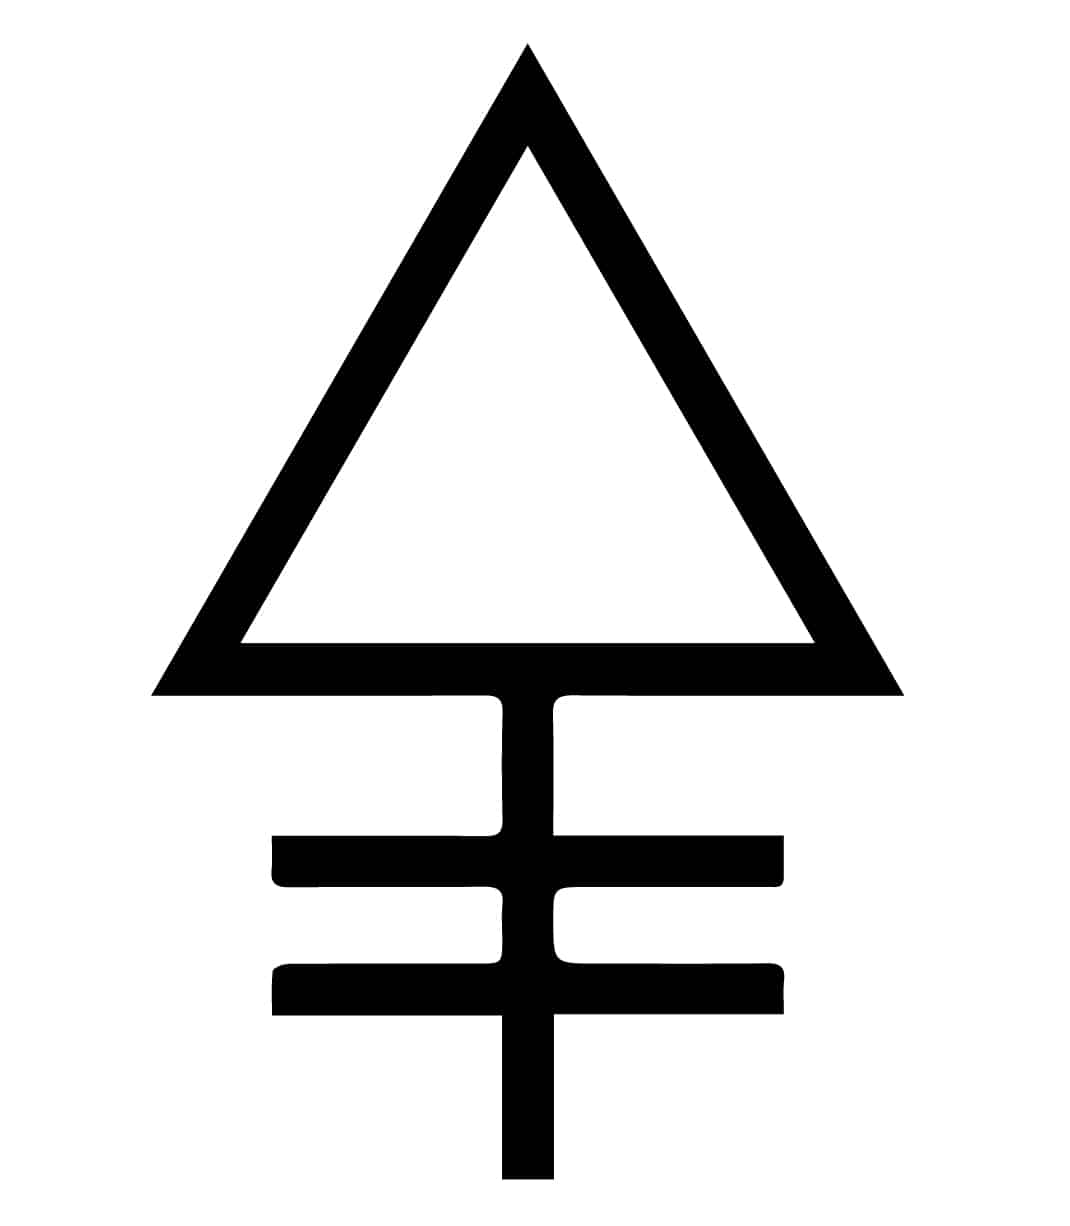 Symbole alchemiczne i ich znaczenie - rozszerzona lista symboli alchemicznych